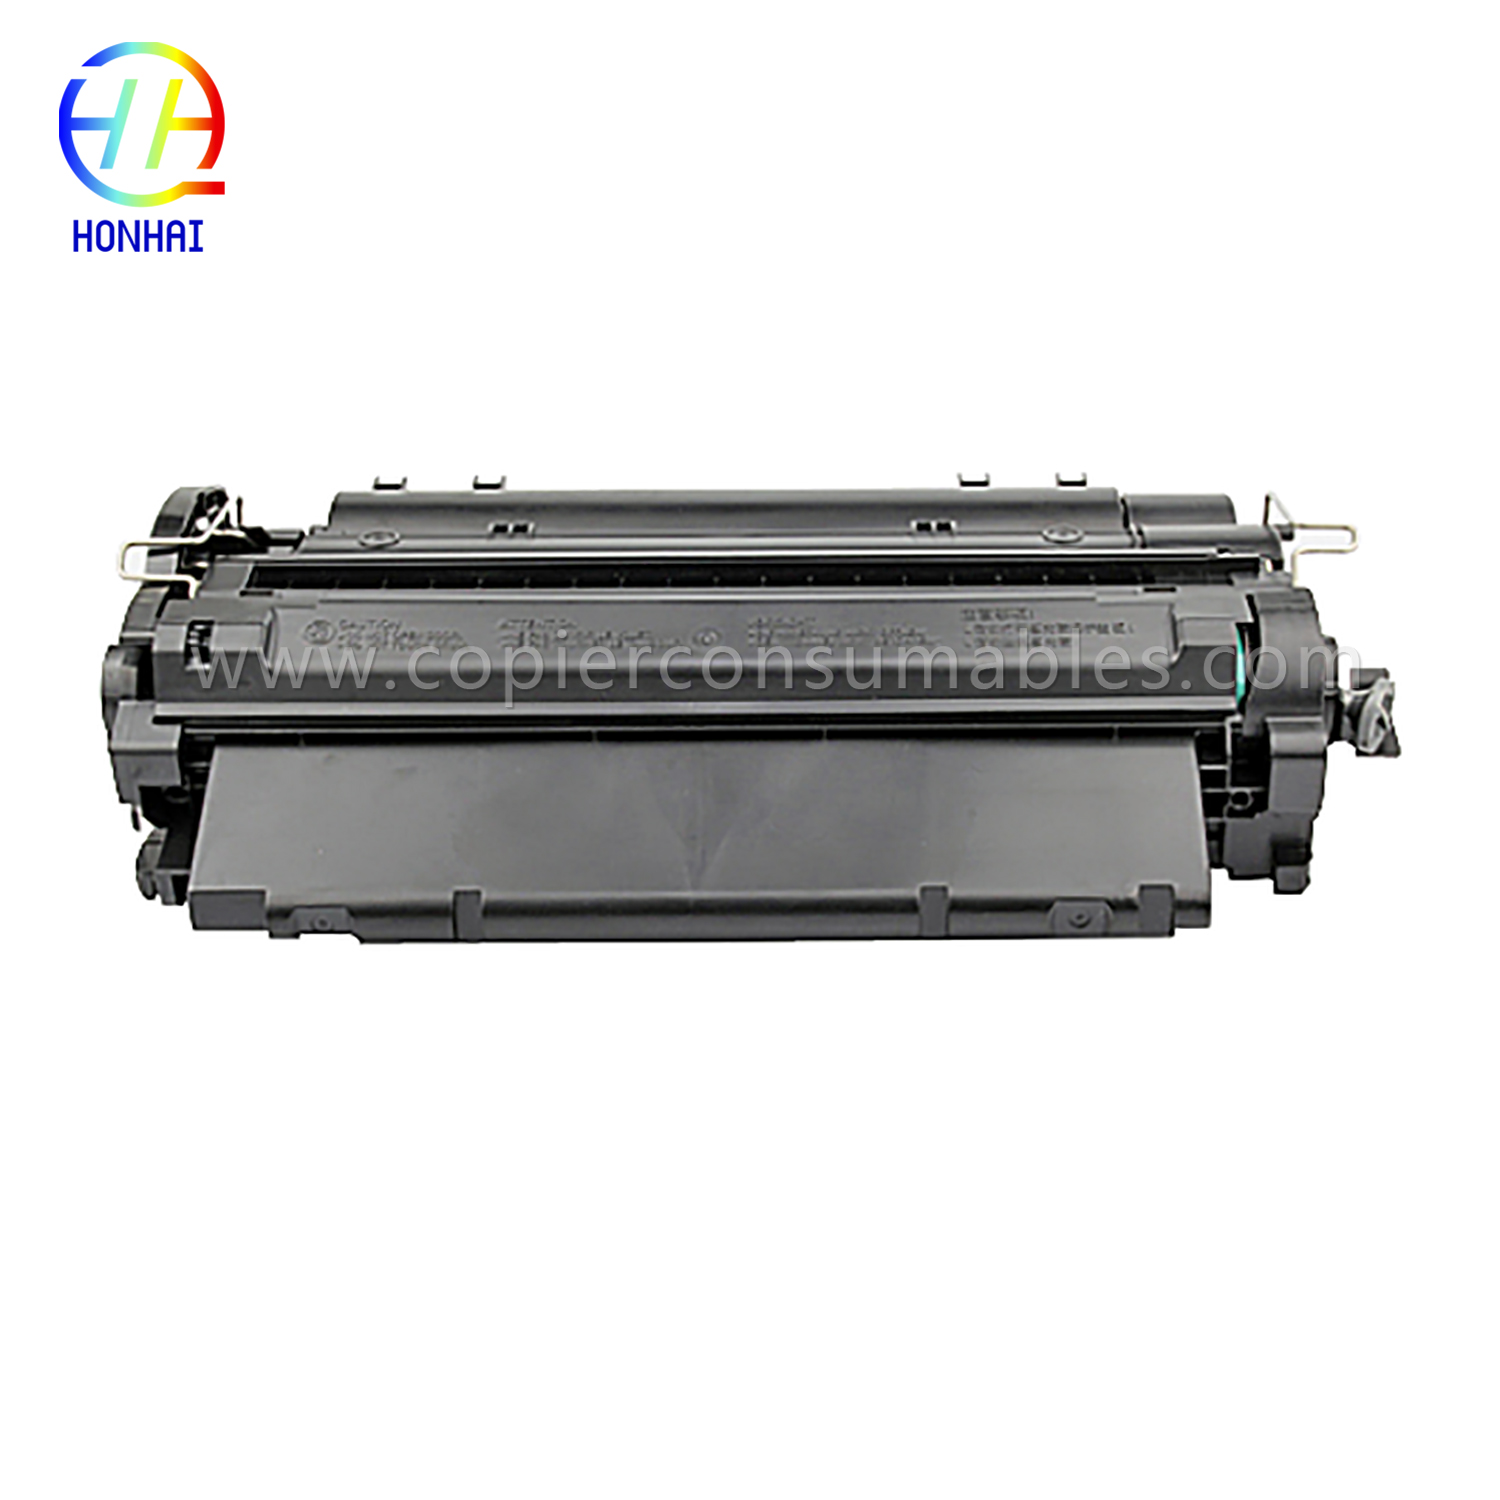 컬러 토너 카트리지 HP LaserJet LaserJet Pro MFP M521dn Enterprise P3015(CE255X) -1 (2)